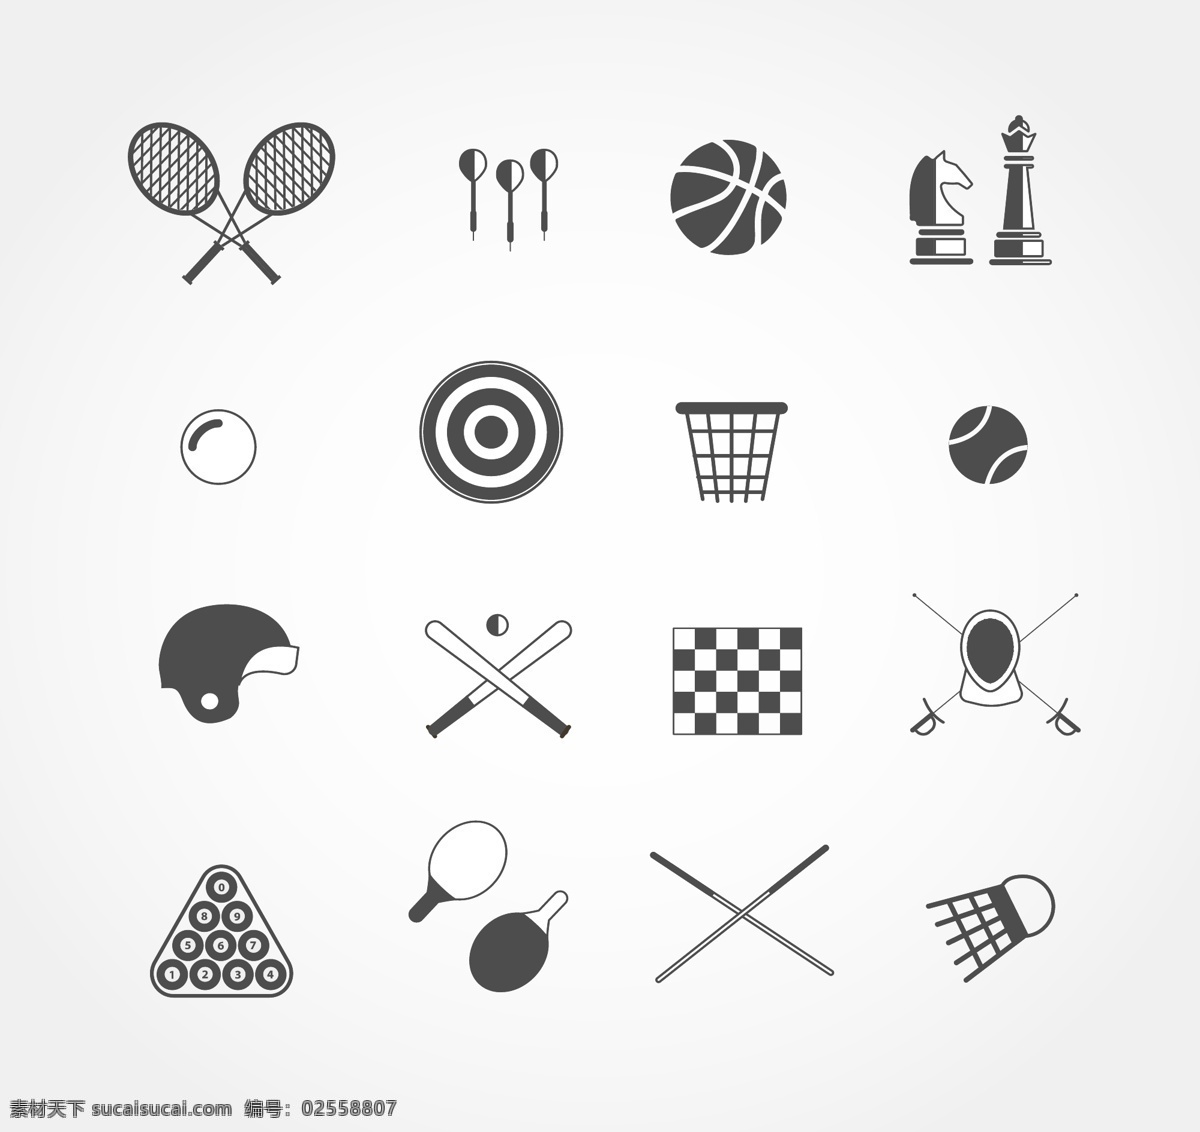 网页 ui 运动类 icon 图标素材 图标设计 icon设计 icon图标 网页图标 图标 运动图标 运动icon 运动 羽毛球拍图标 篮球图标 球图标 兵乓球图标